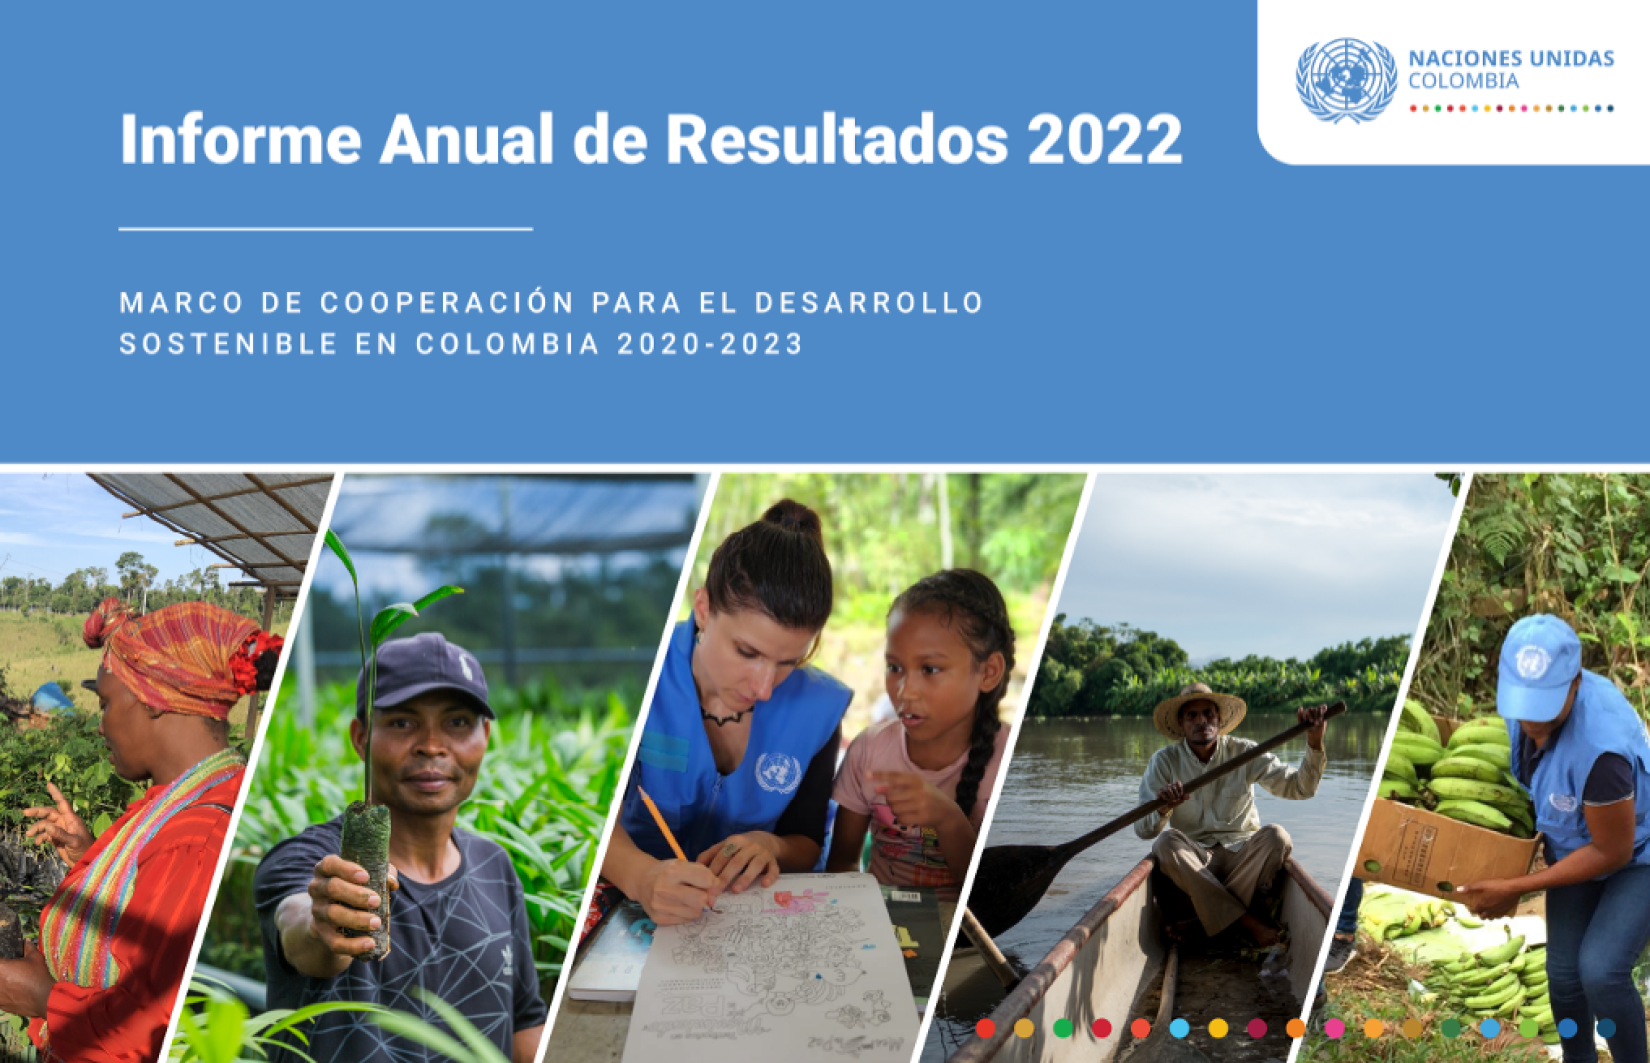 Informe Anual de Resultados 2022 Naciones Unidas Colombia. Marco de Cooperación para el Desarrollo Sostenible en Colombia 2020-2023